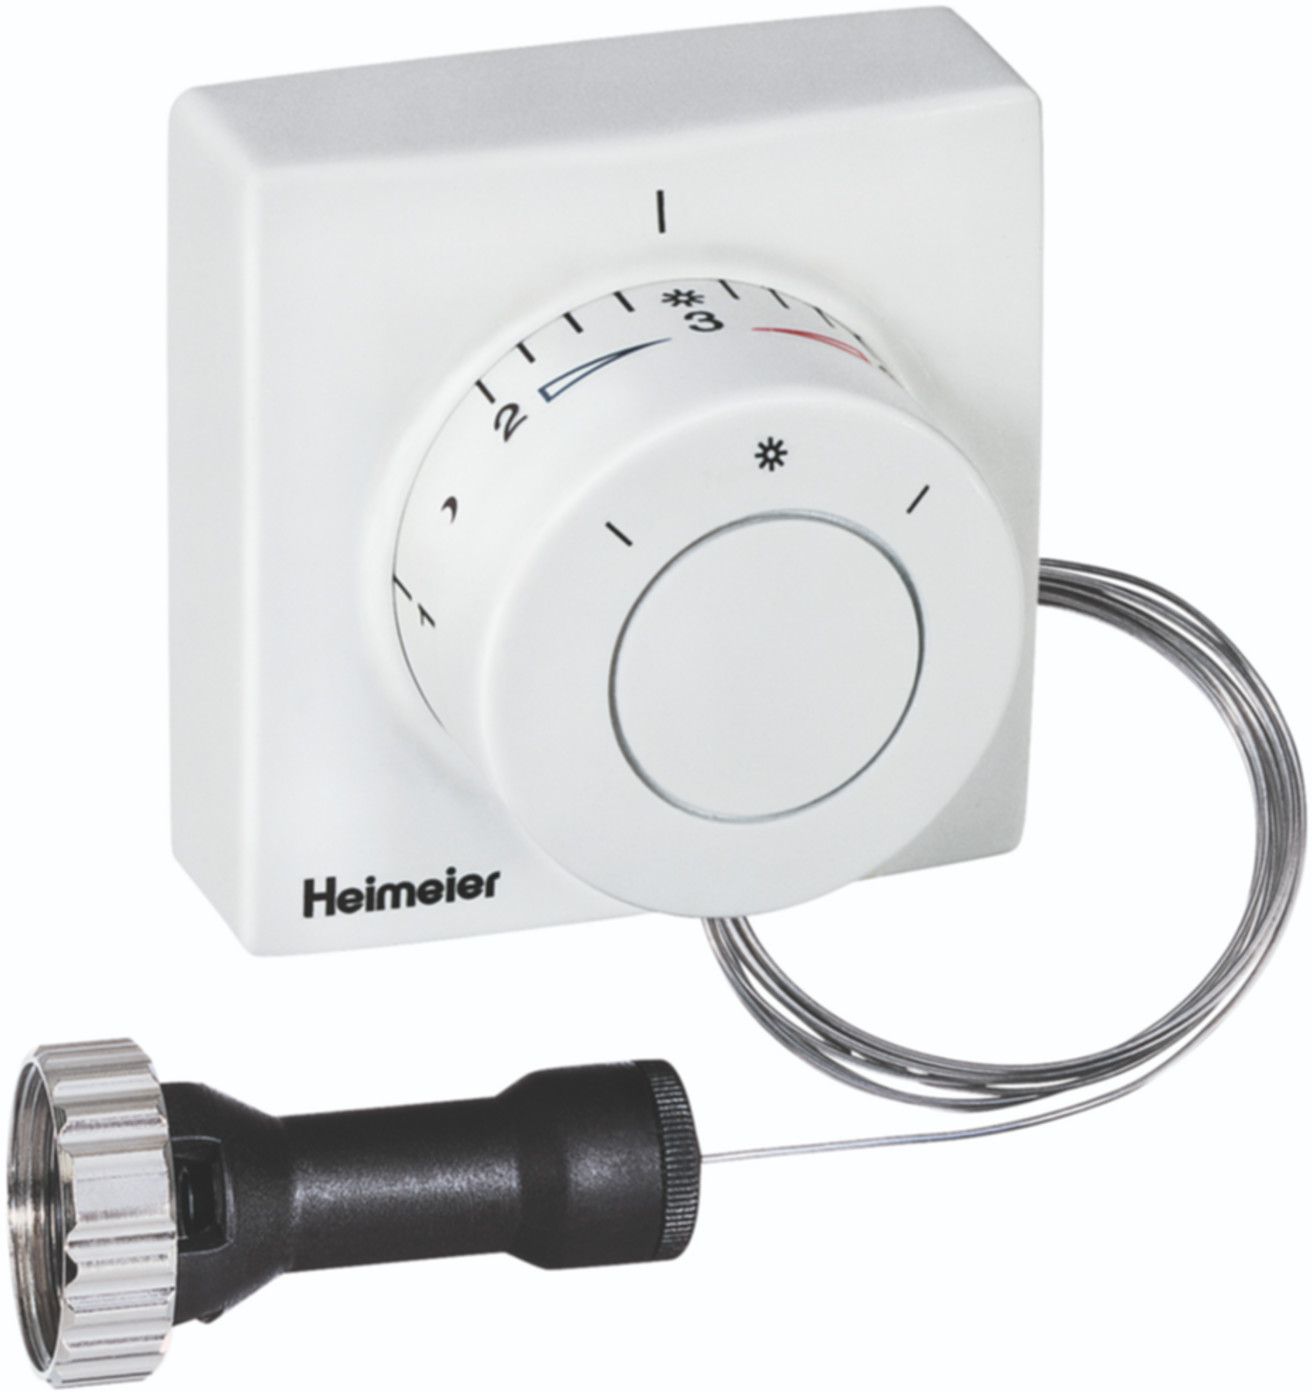 Thermostatkopf F m/Ferneinsteller 2 m 2802-00.500 - Heimeier Programm